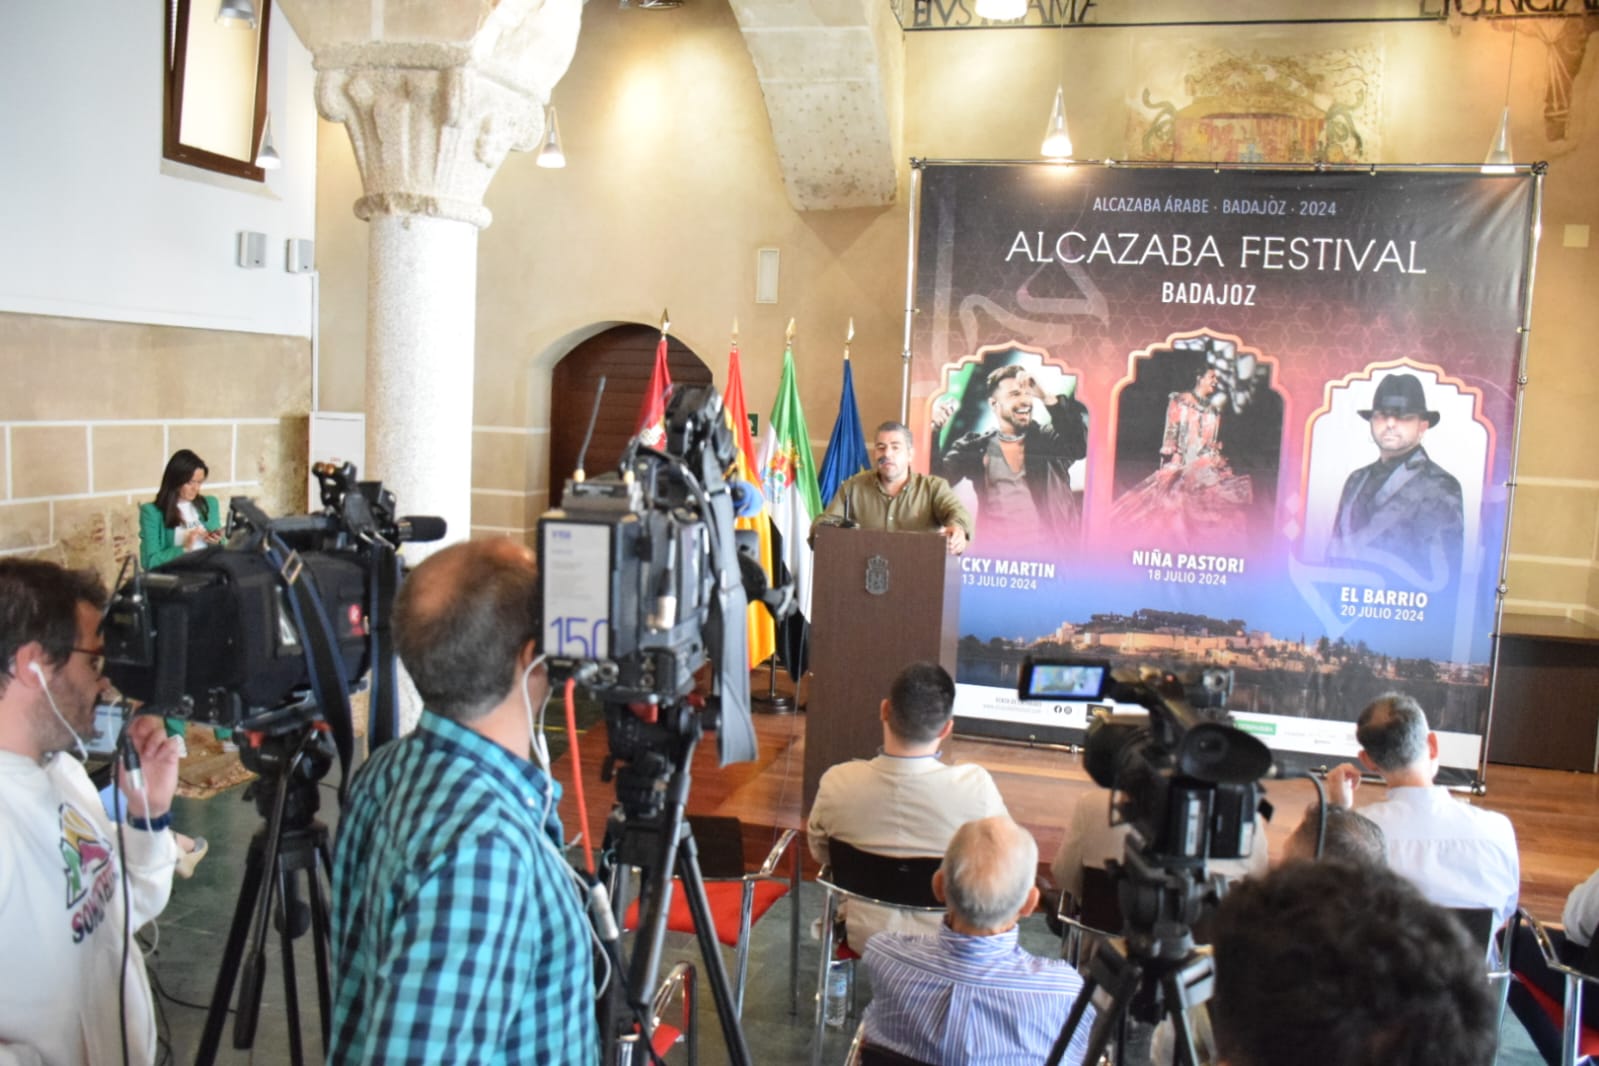 Image 4 of article Ricky Martin, El Barrio y Niña Pastori conforman el cartel del Alcazaba Festival 2024